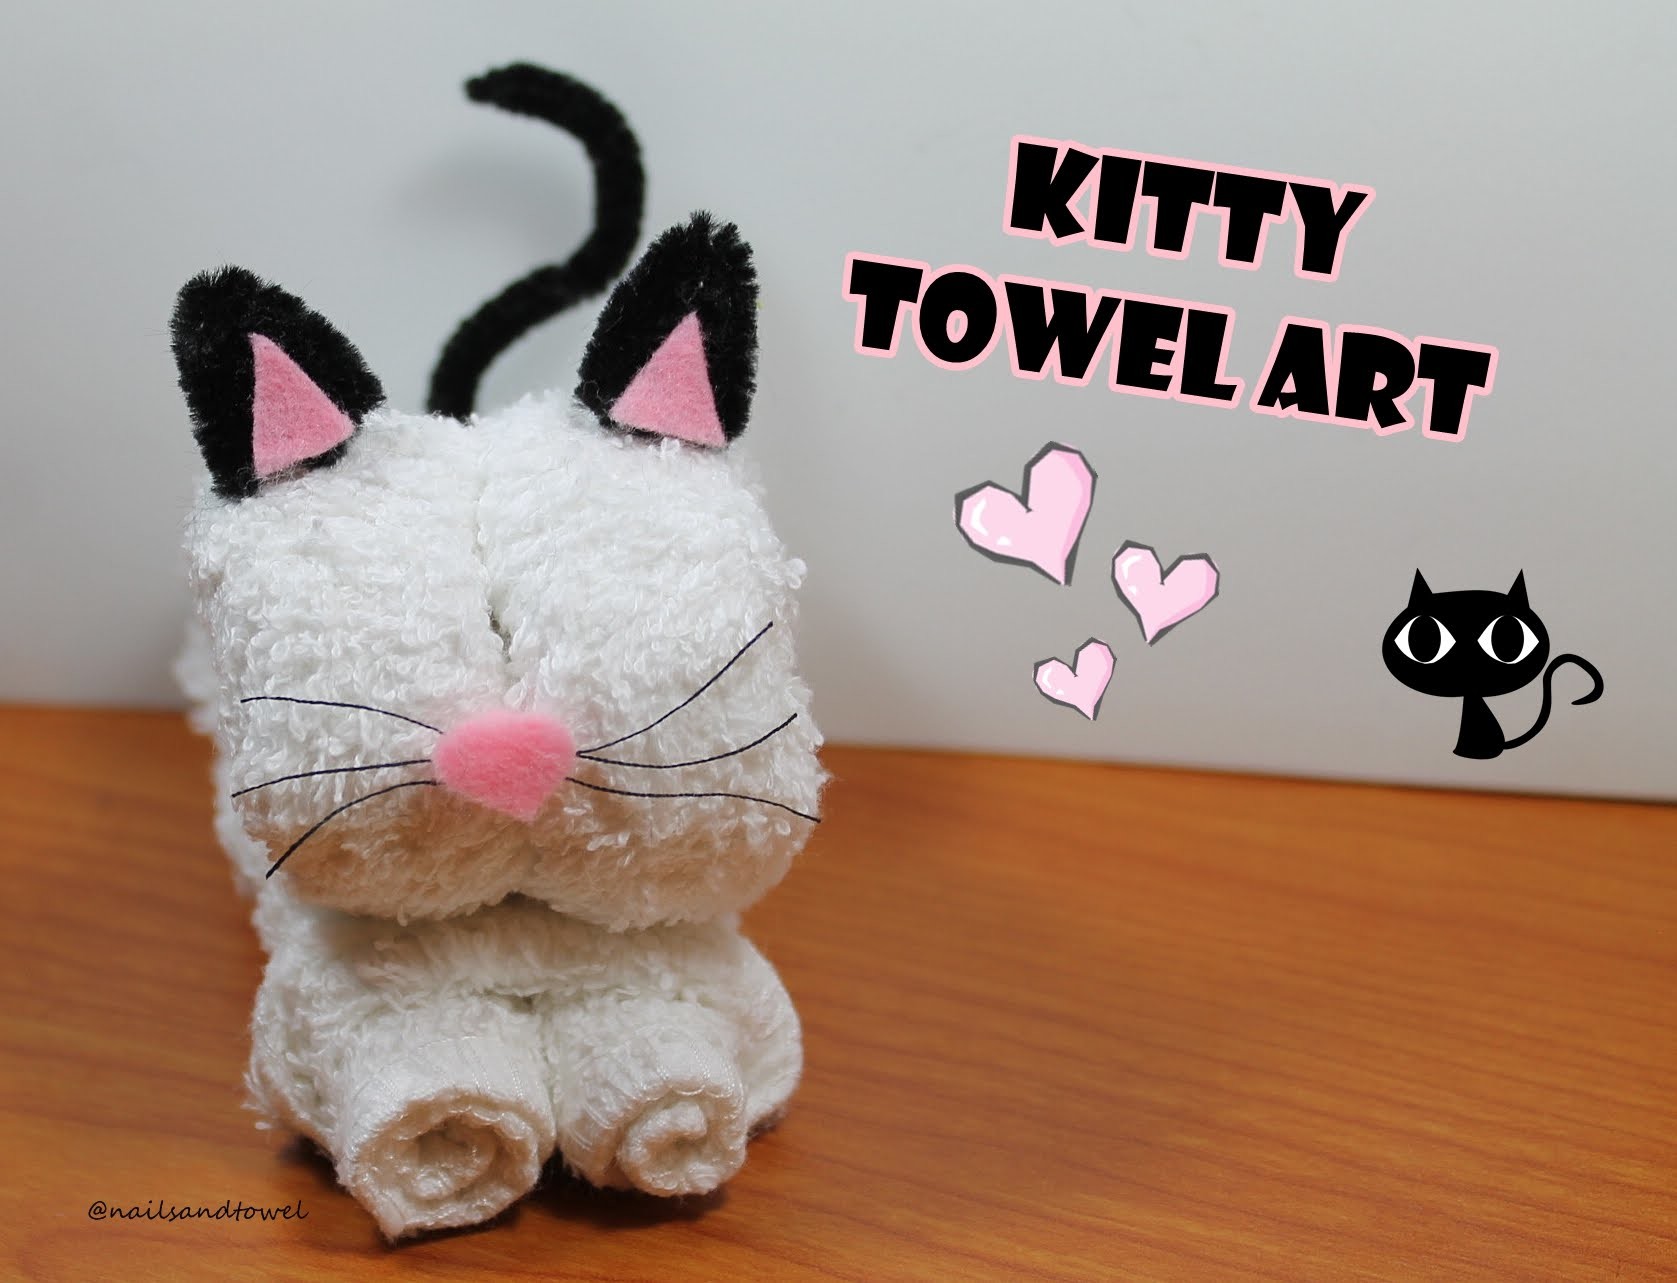 How to make a Kitty Towel Art - Video Tutorial. Como hacer un Gatito con Toalla